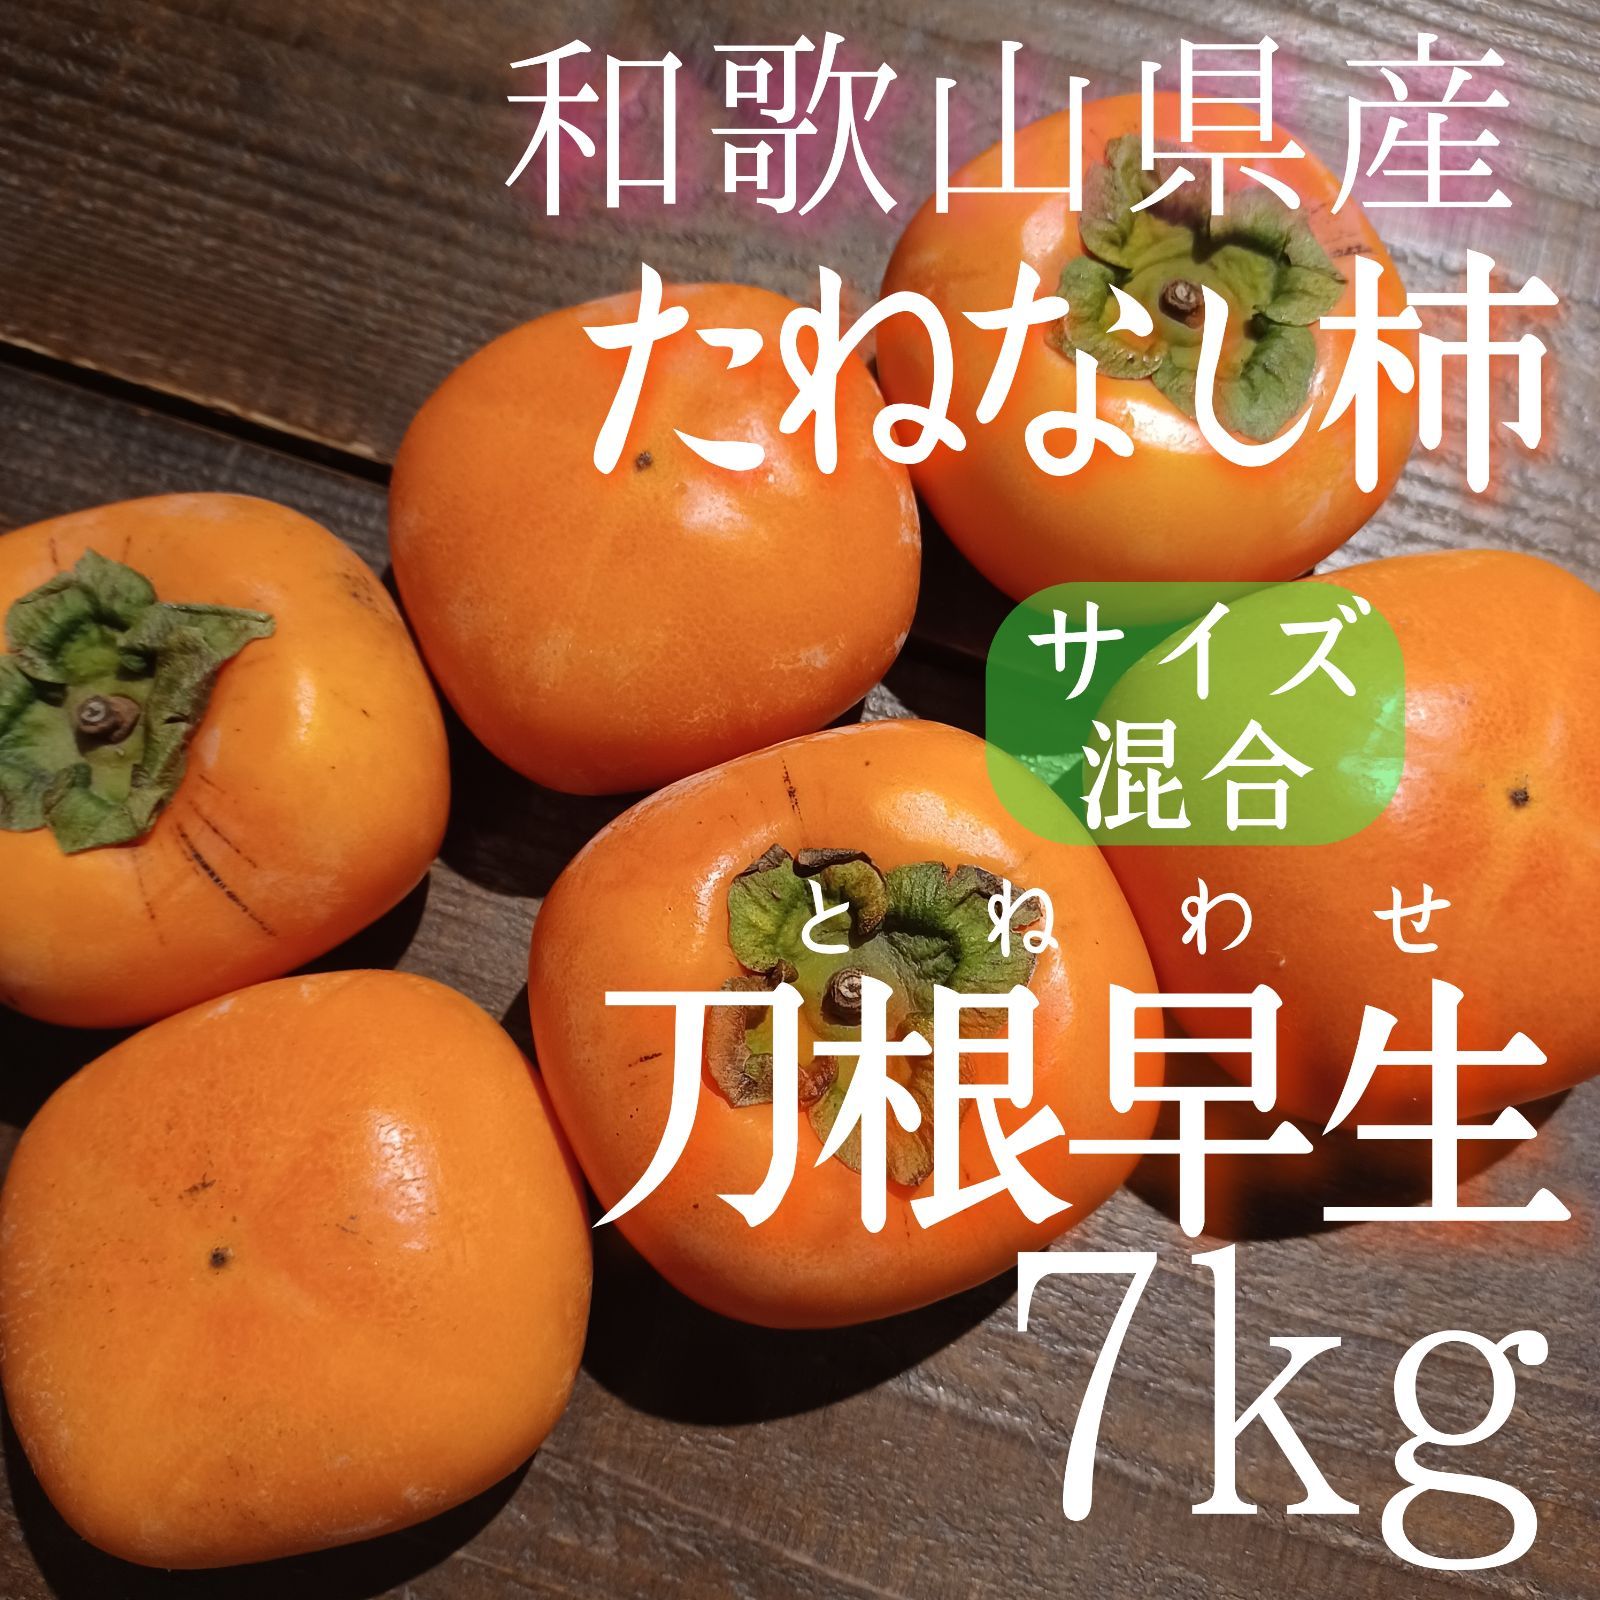 かつらぎの種なし柿【和歌山県かつらぎ町産】 - 紀州三昧